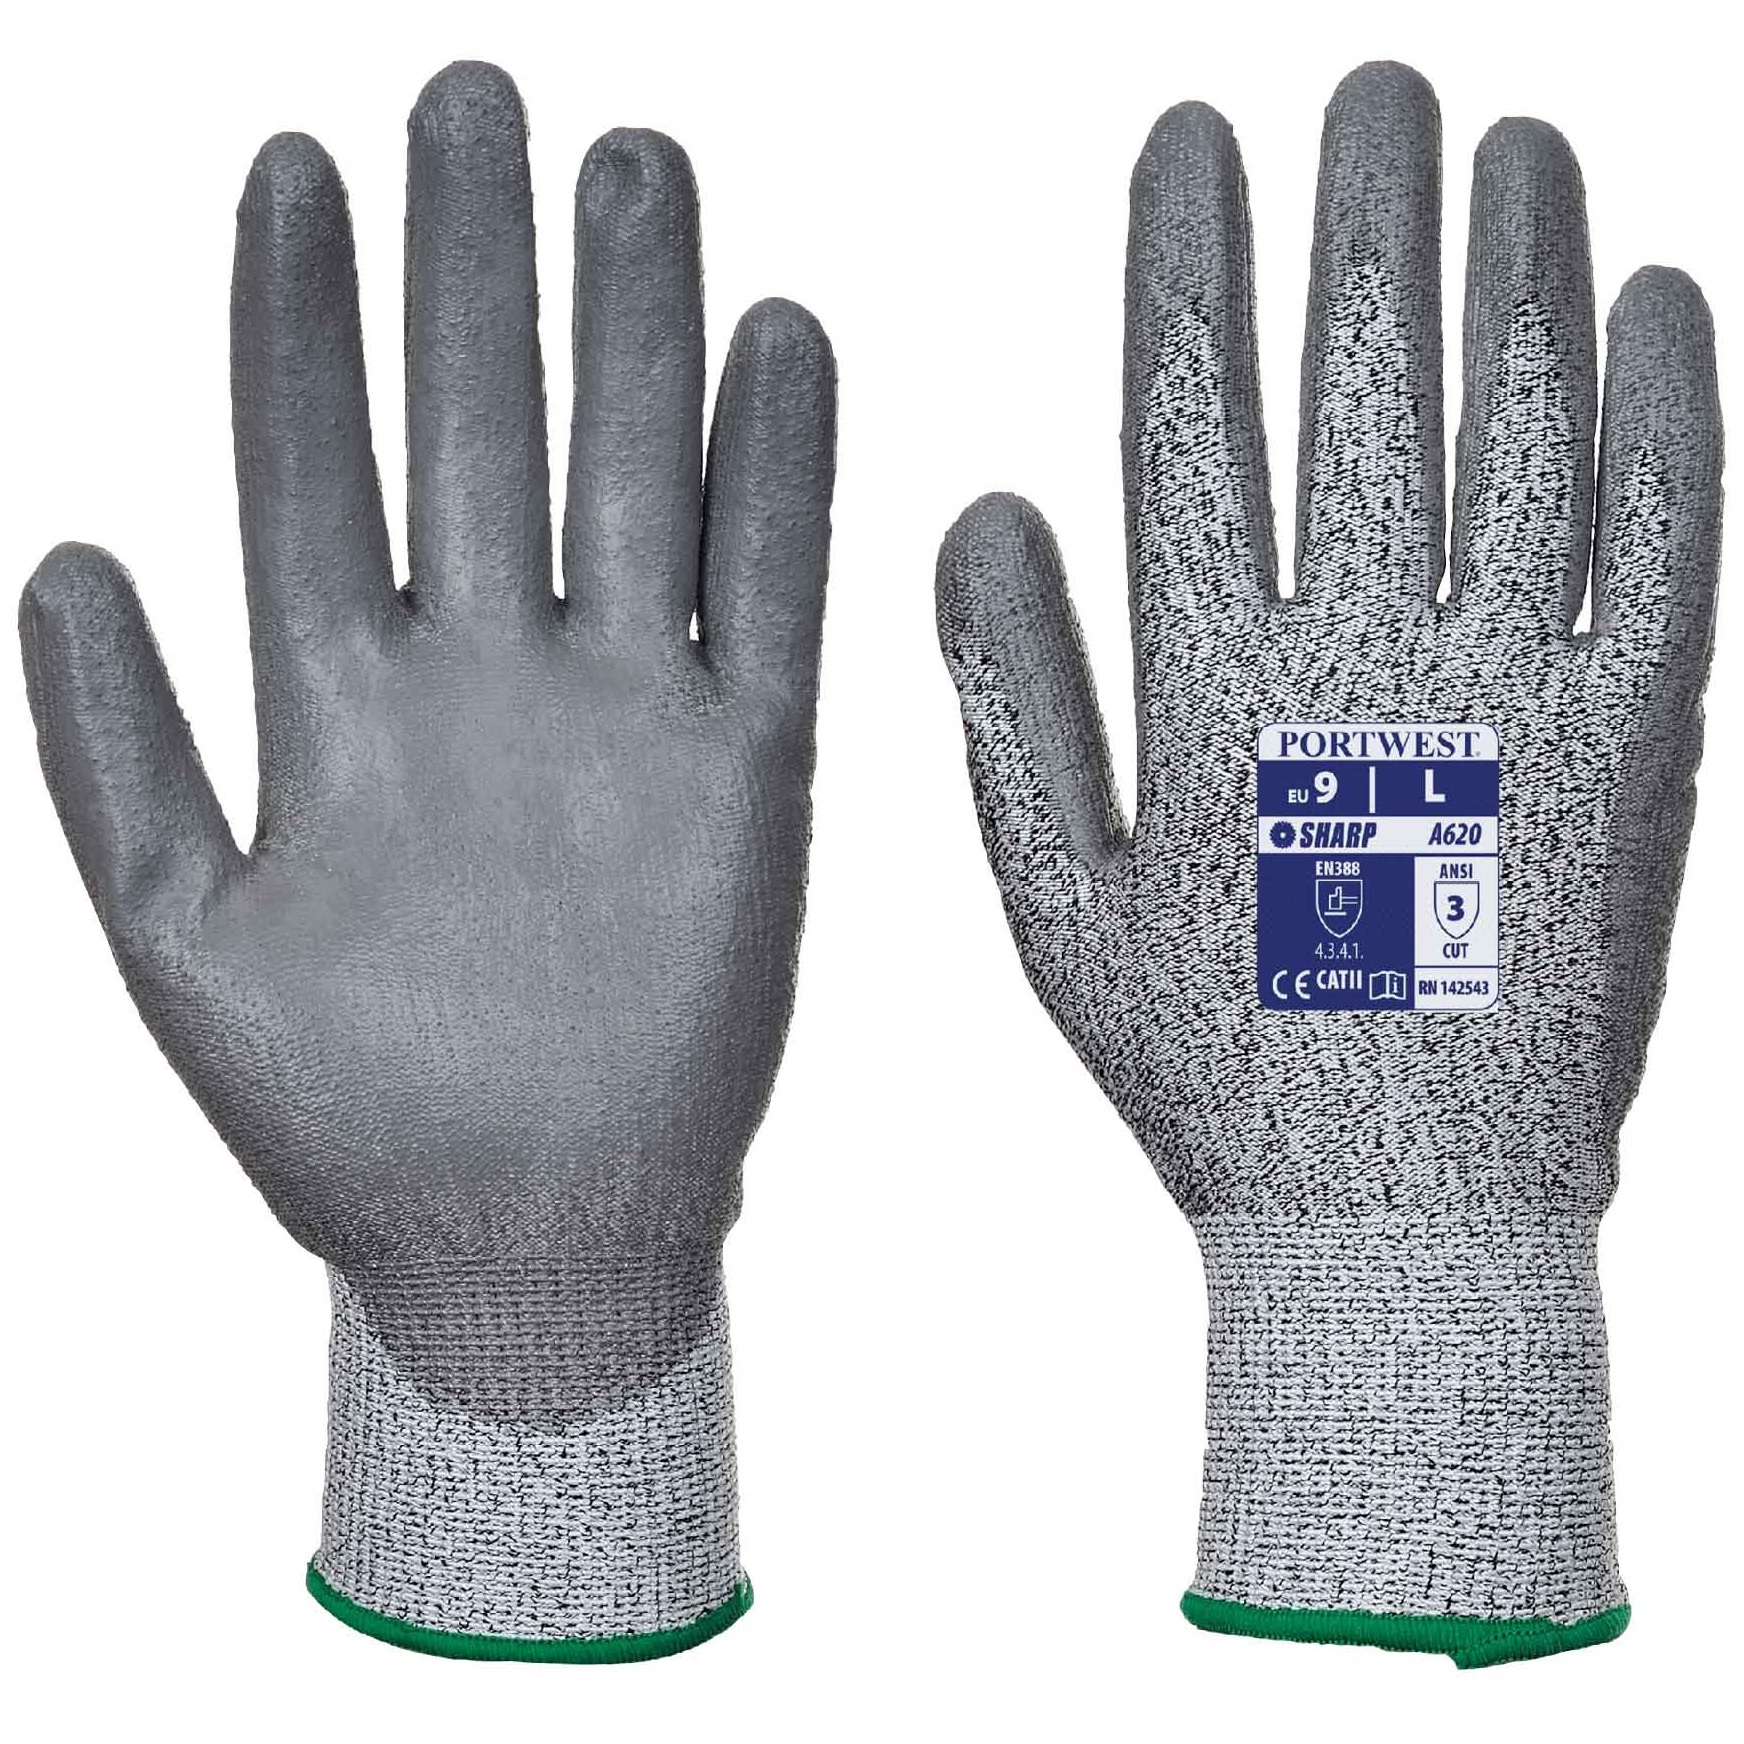 Optional Damm Bestätigung tipos de guantes de trabajo durchführen ...